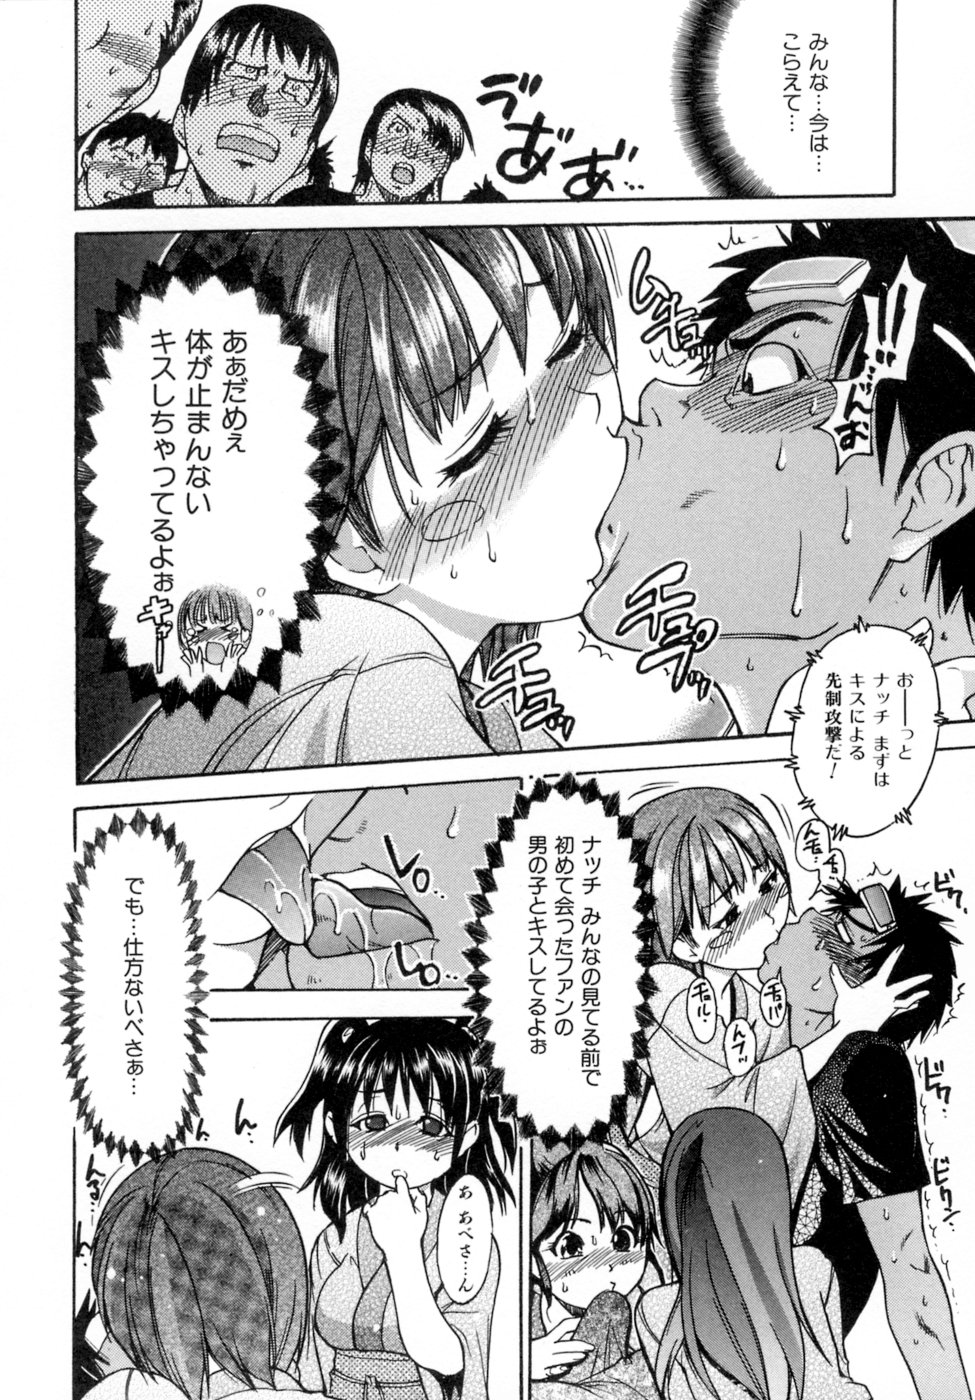 [Shiwasu no Okina] Shining Musume. 5. Five Sense of Love page 36 full